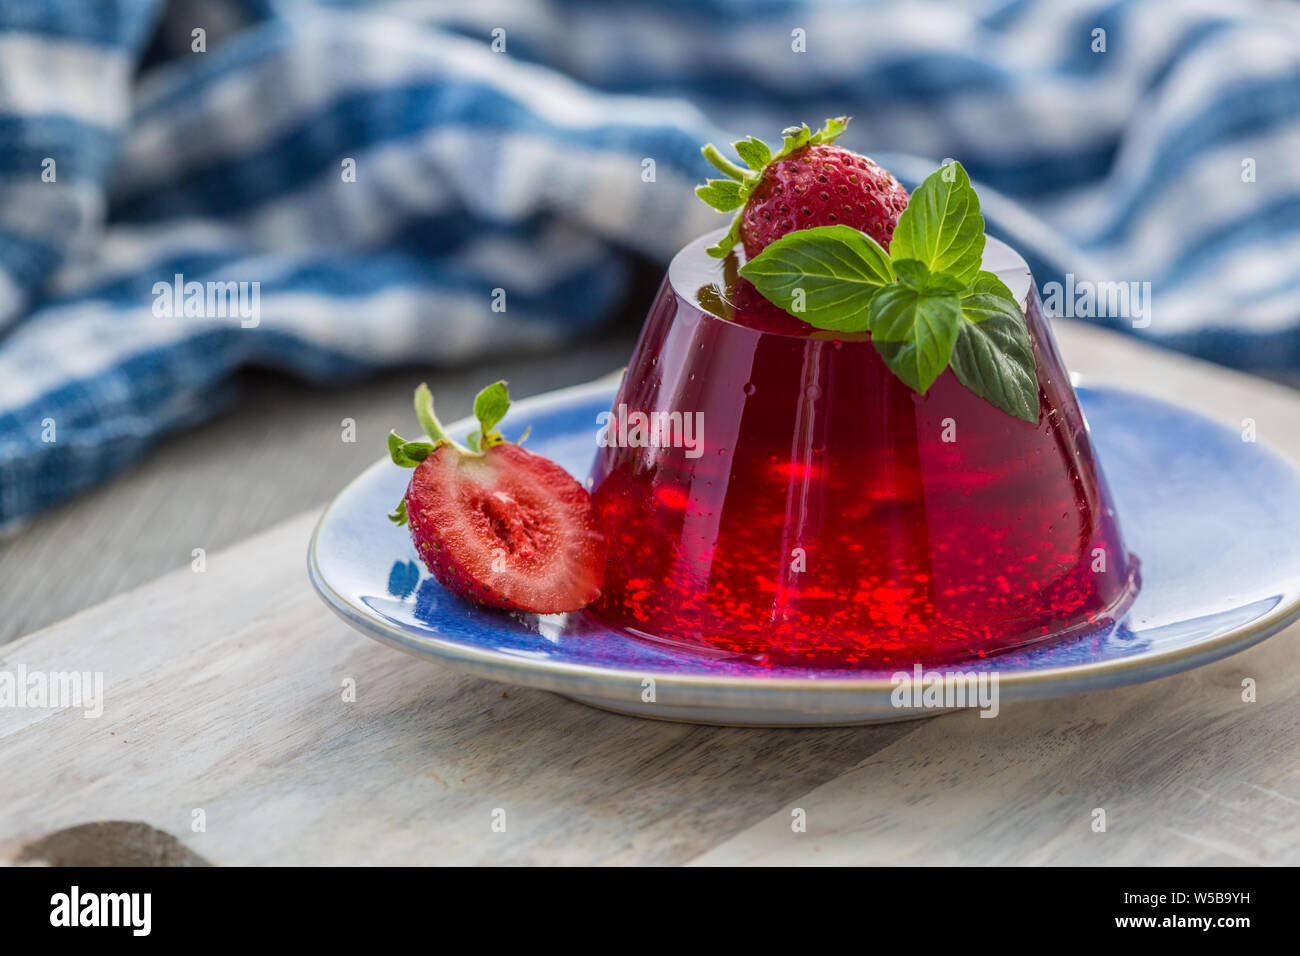 Photo de l'été Jelly dessert avec la fraise. Garni d'un brin de basilic frais sur fond clair. Banque D'Images